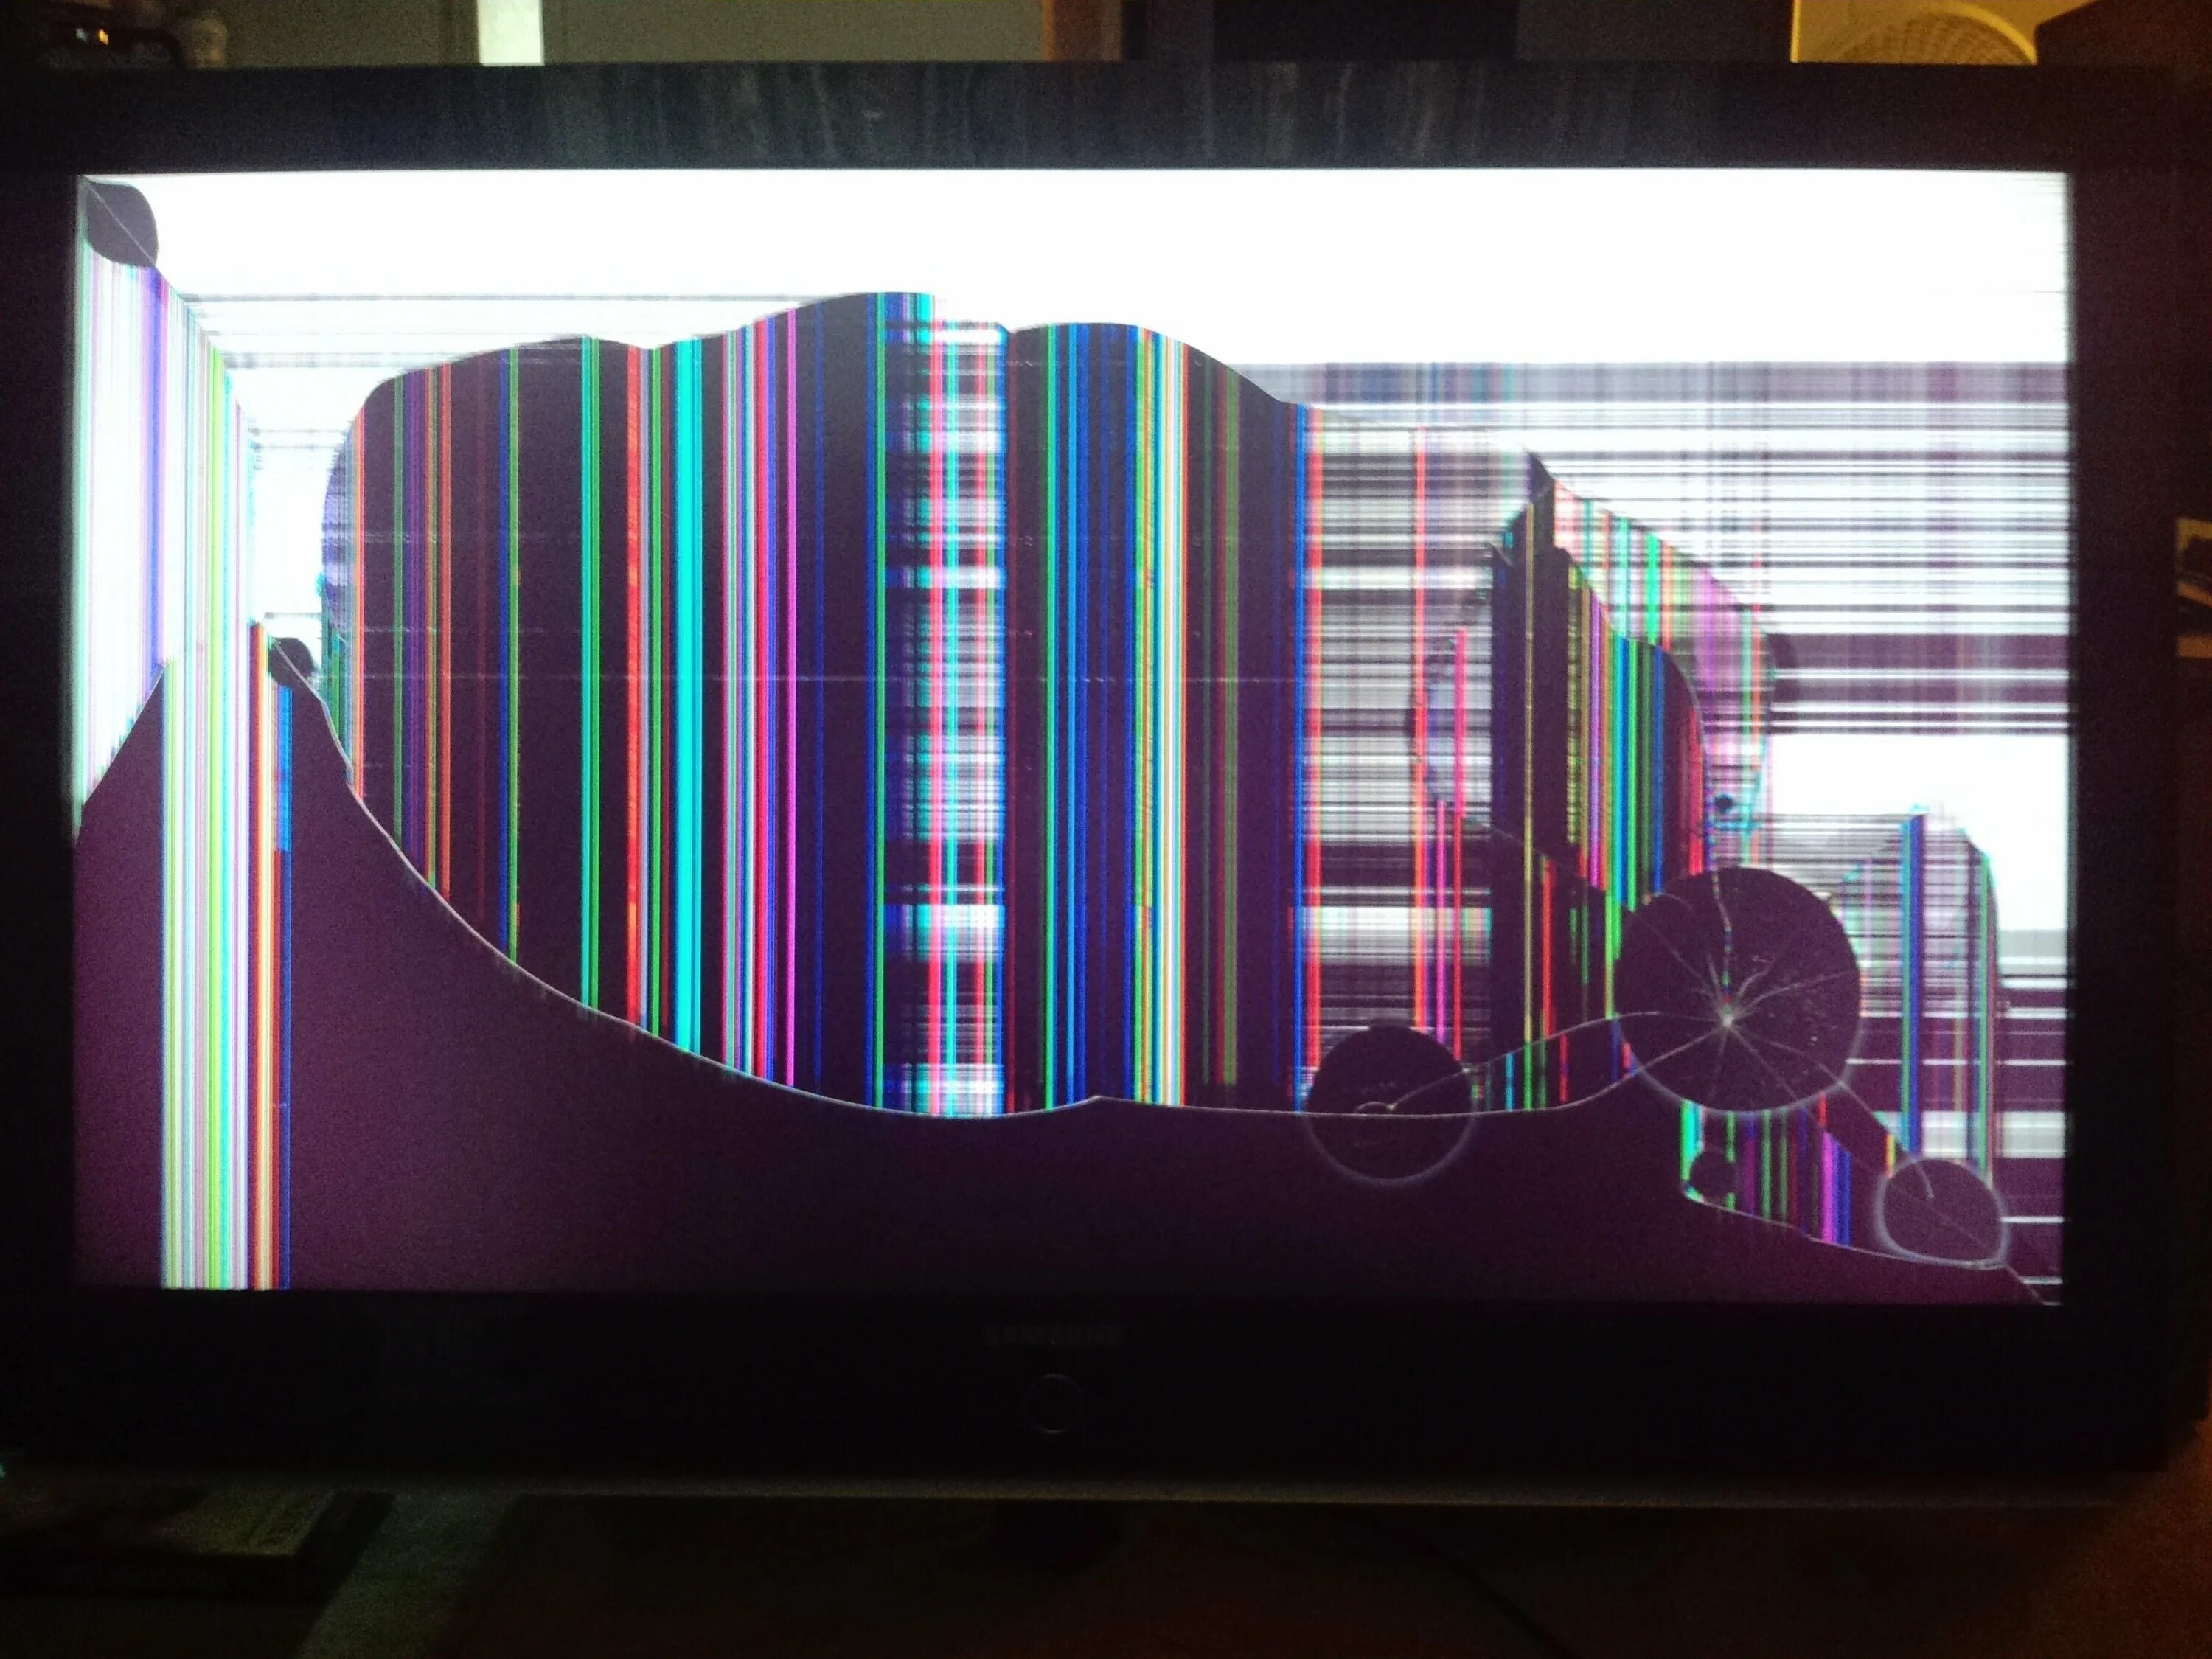 Разбитый телевизор. Разбитый экран телевизора. Разбитый икран теливизара. Разноцветные полосы на телевизоре.